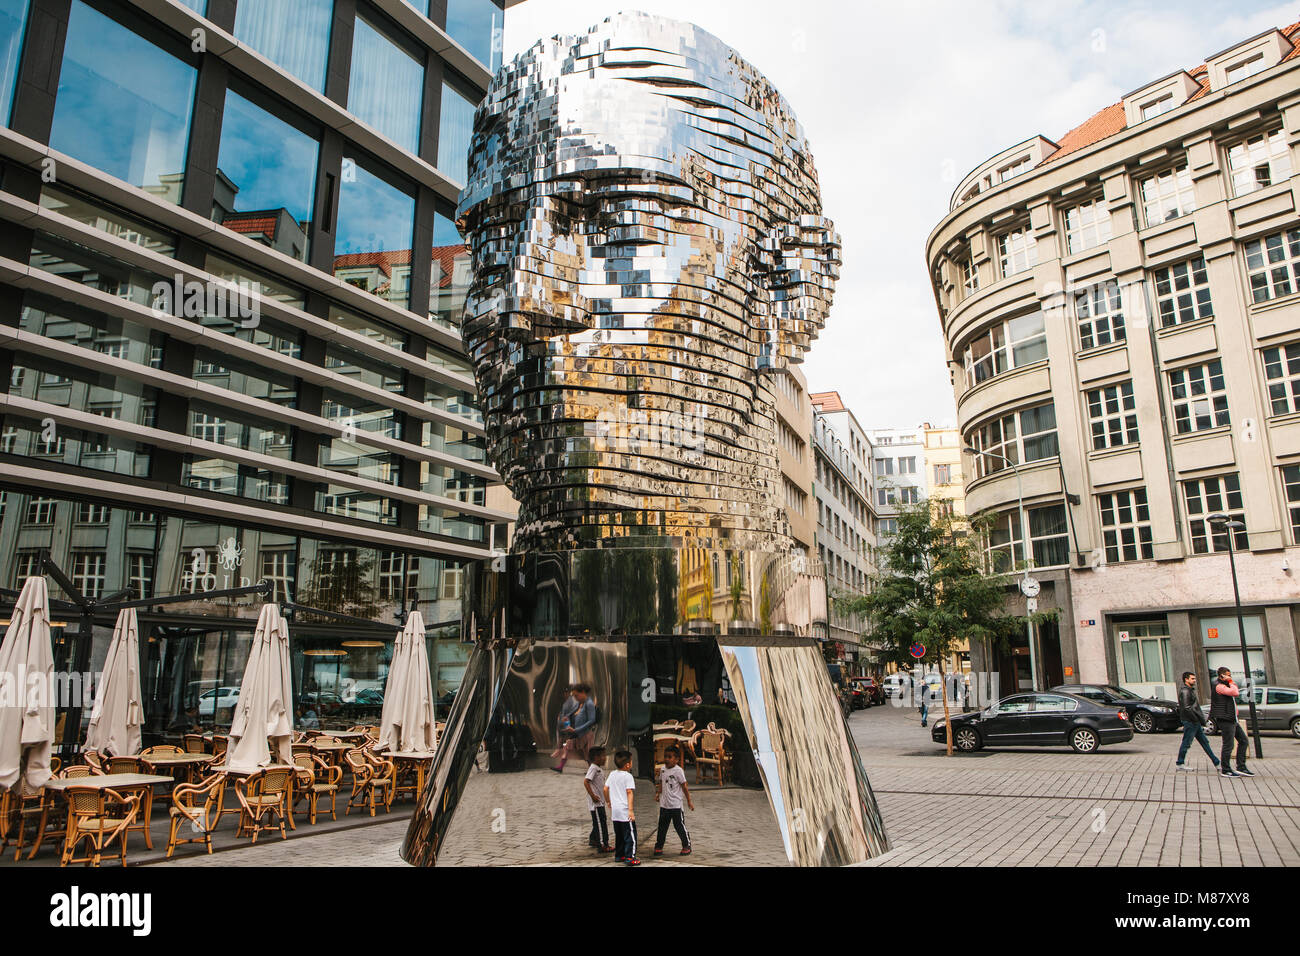 Prague, le 25 septembre 2017 : La sculpture de Franz Kafka se trouve près de la centre commercial appelé Quadrio au-dessus de la station de métro, qui s'appelle Narod Banque D'Images